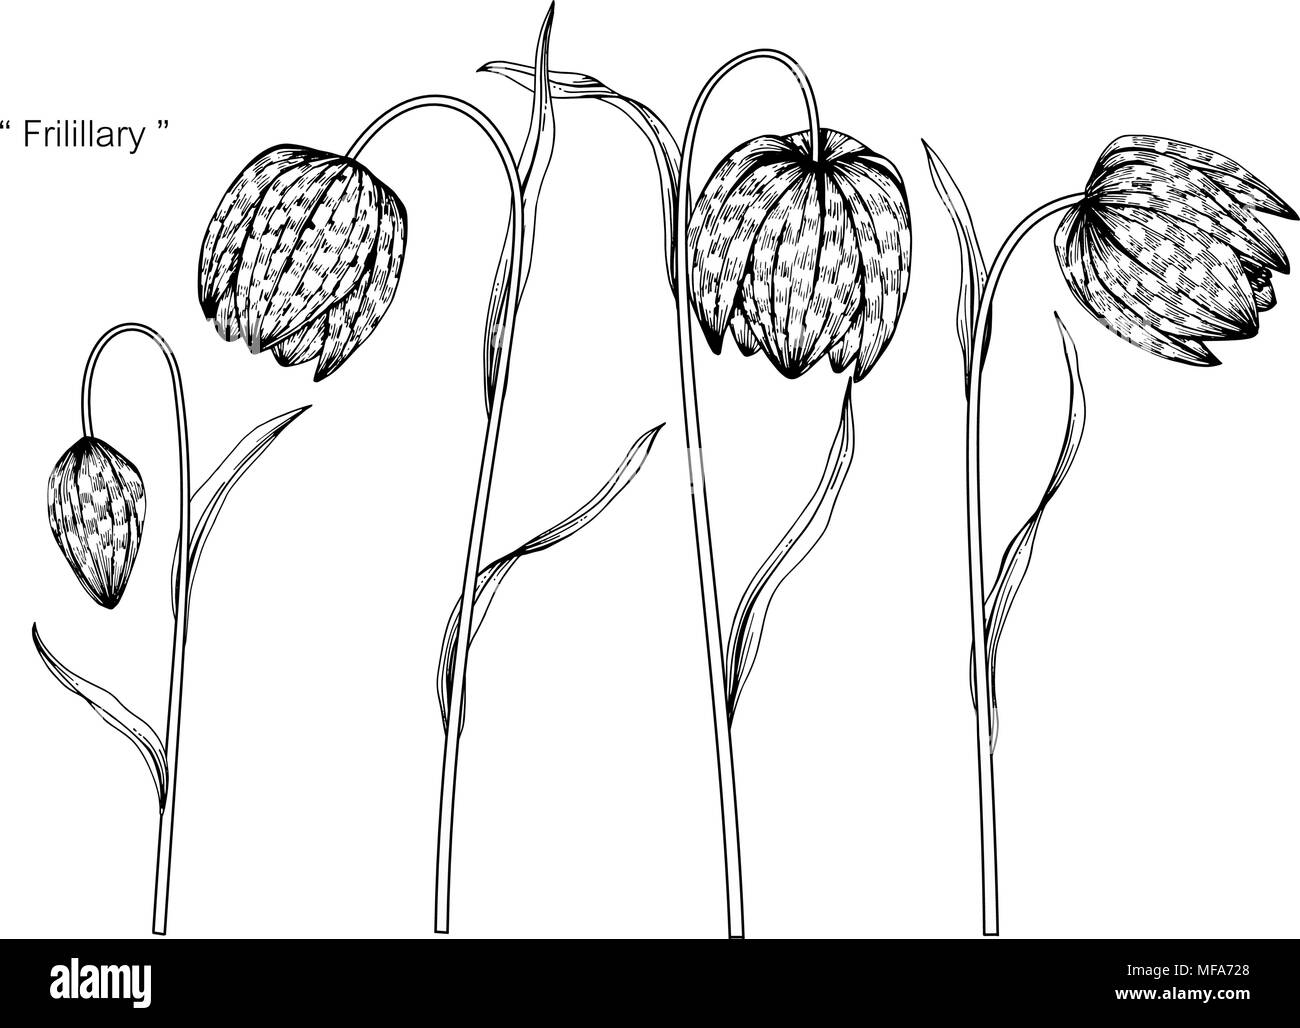 Die Schlange Kopf fritillary Blume zeichnen Abbildung. Schwarz und Weiß mit Line Art auf weißem Hintergrund. Stock Vektor